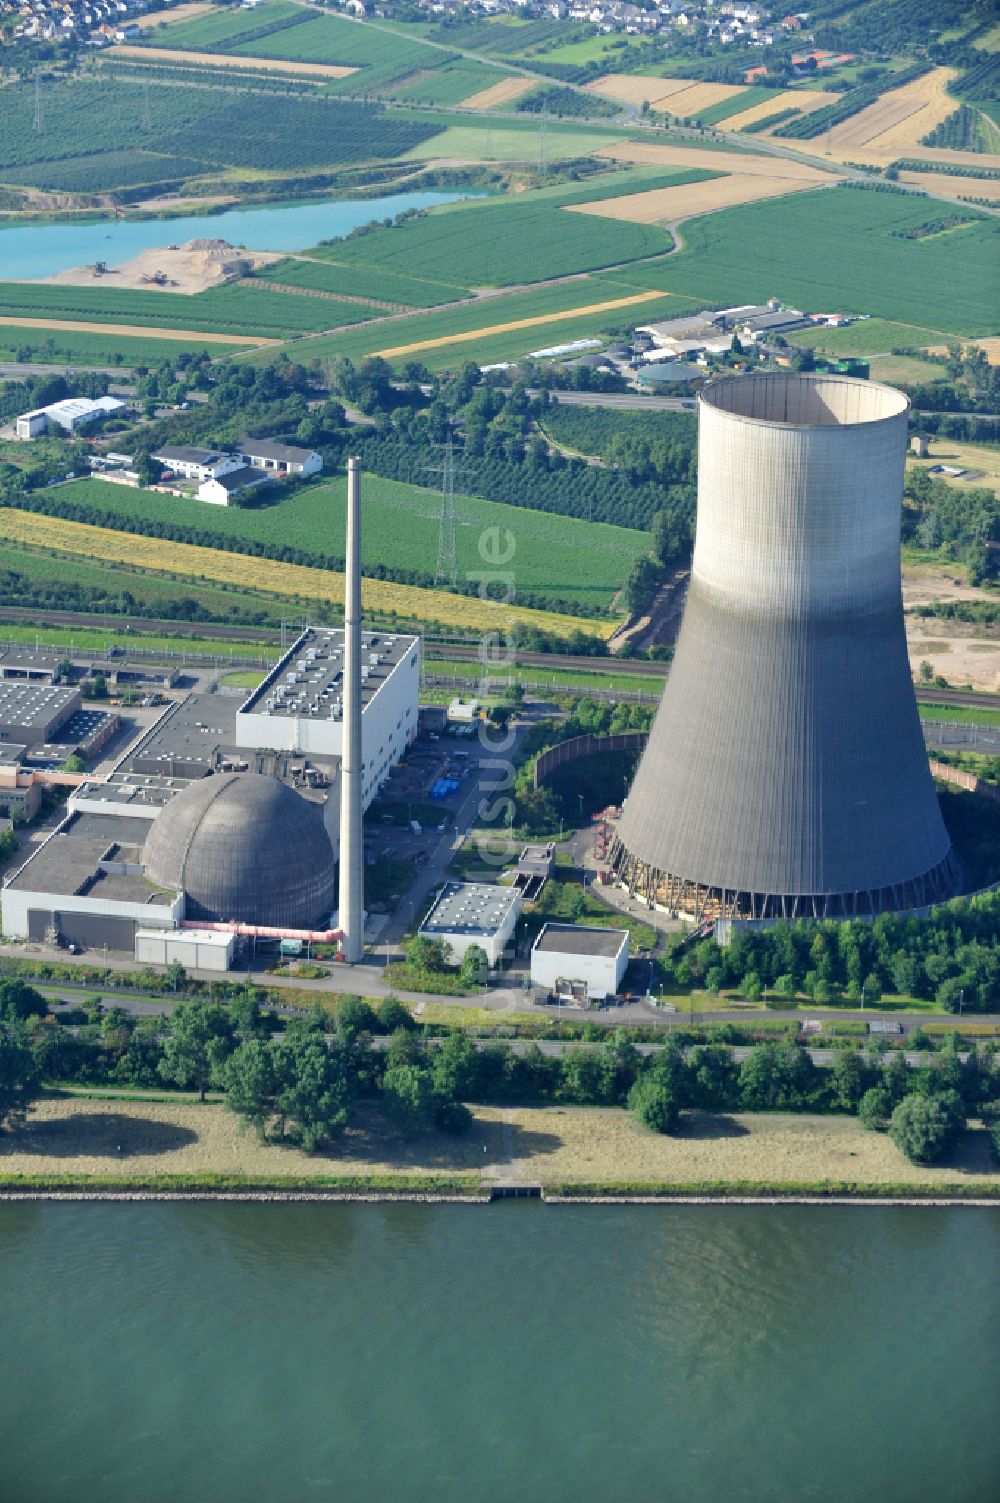 Mülheim-Kärlich aus der Vogelperspektive: Reaktorblöcke und Anlagen des AKW - KKW Kernkraftwerk in Mülheim-Kärlich im Bundesland Rheinland-Pfalz, Deutschland